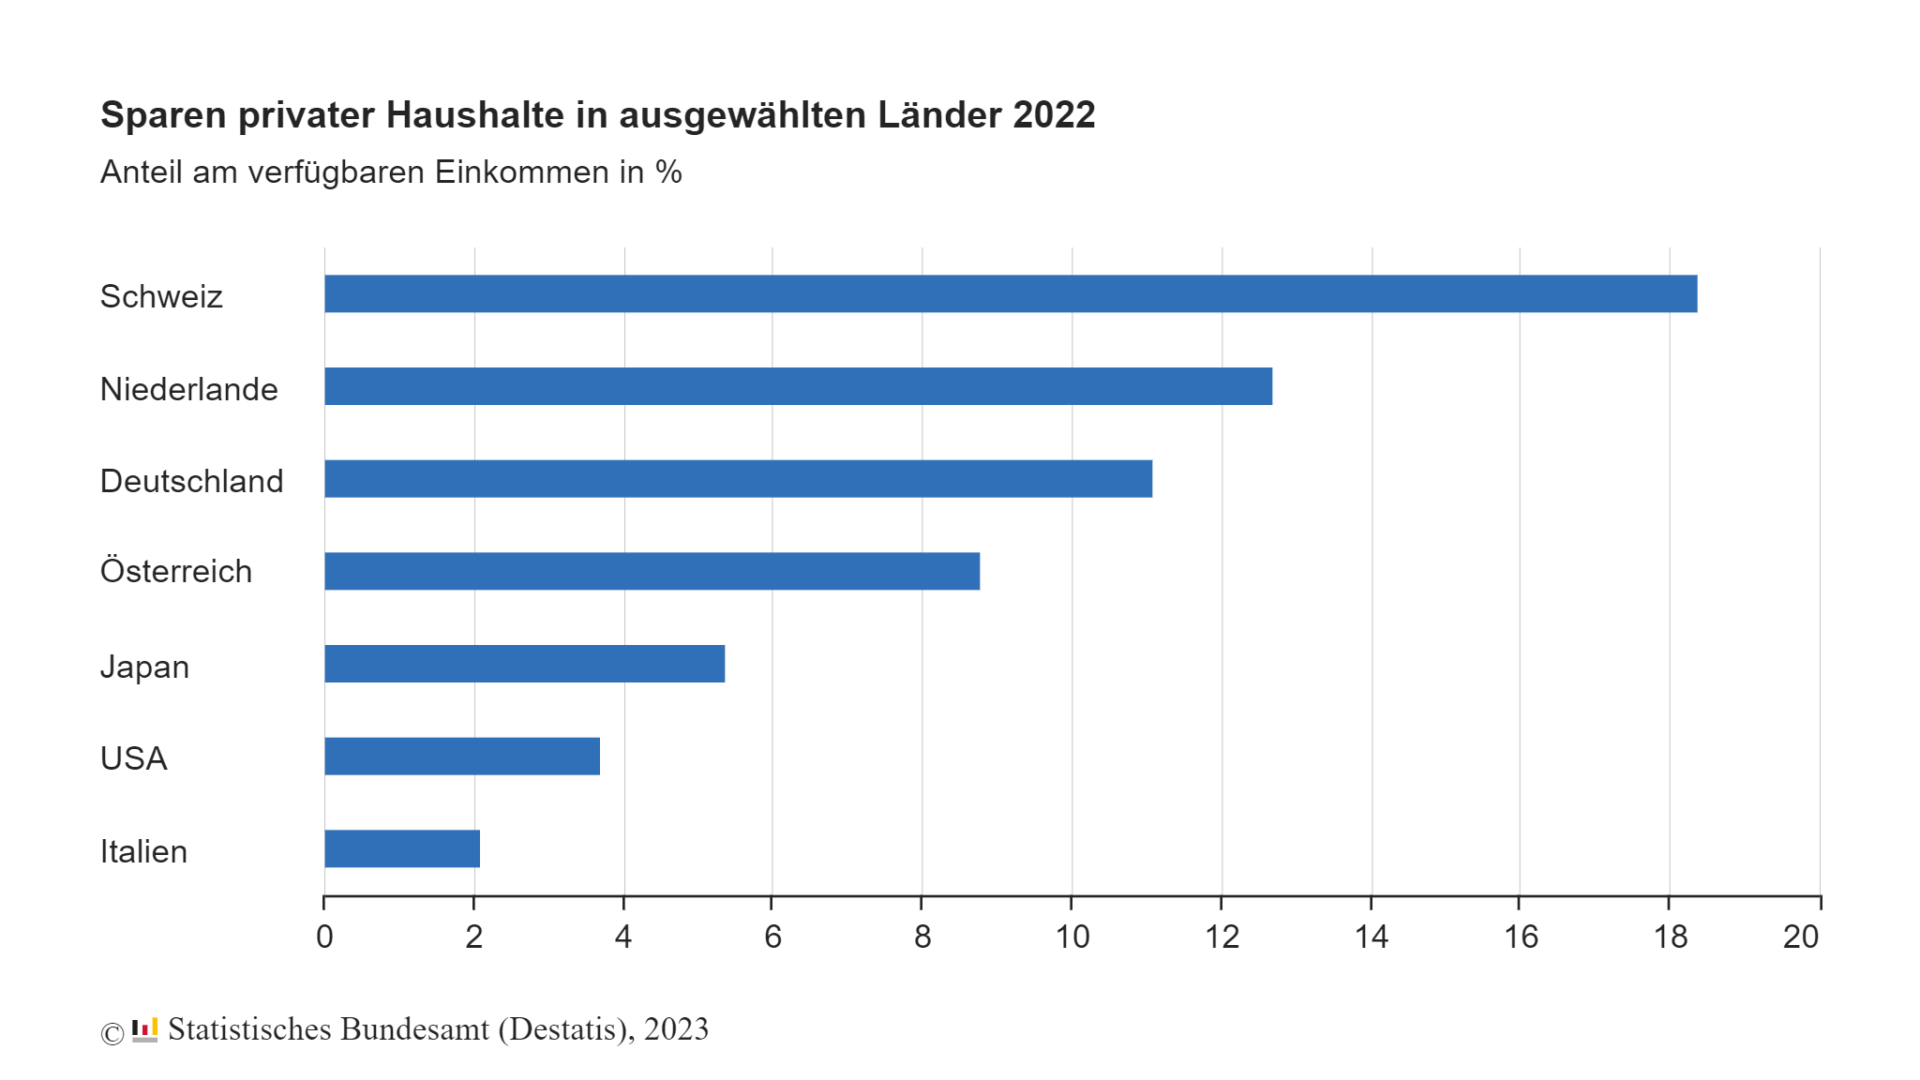 Sparen privater Haushalte in ausgewählten Lander 2022